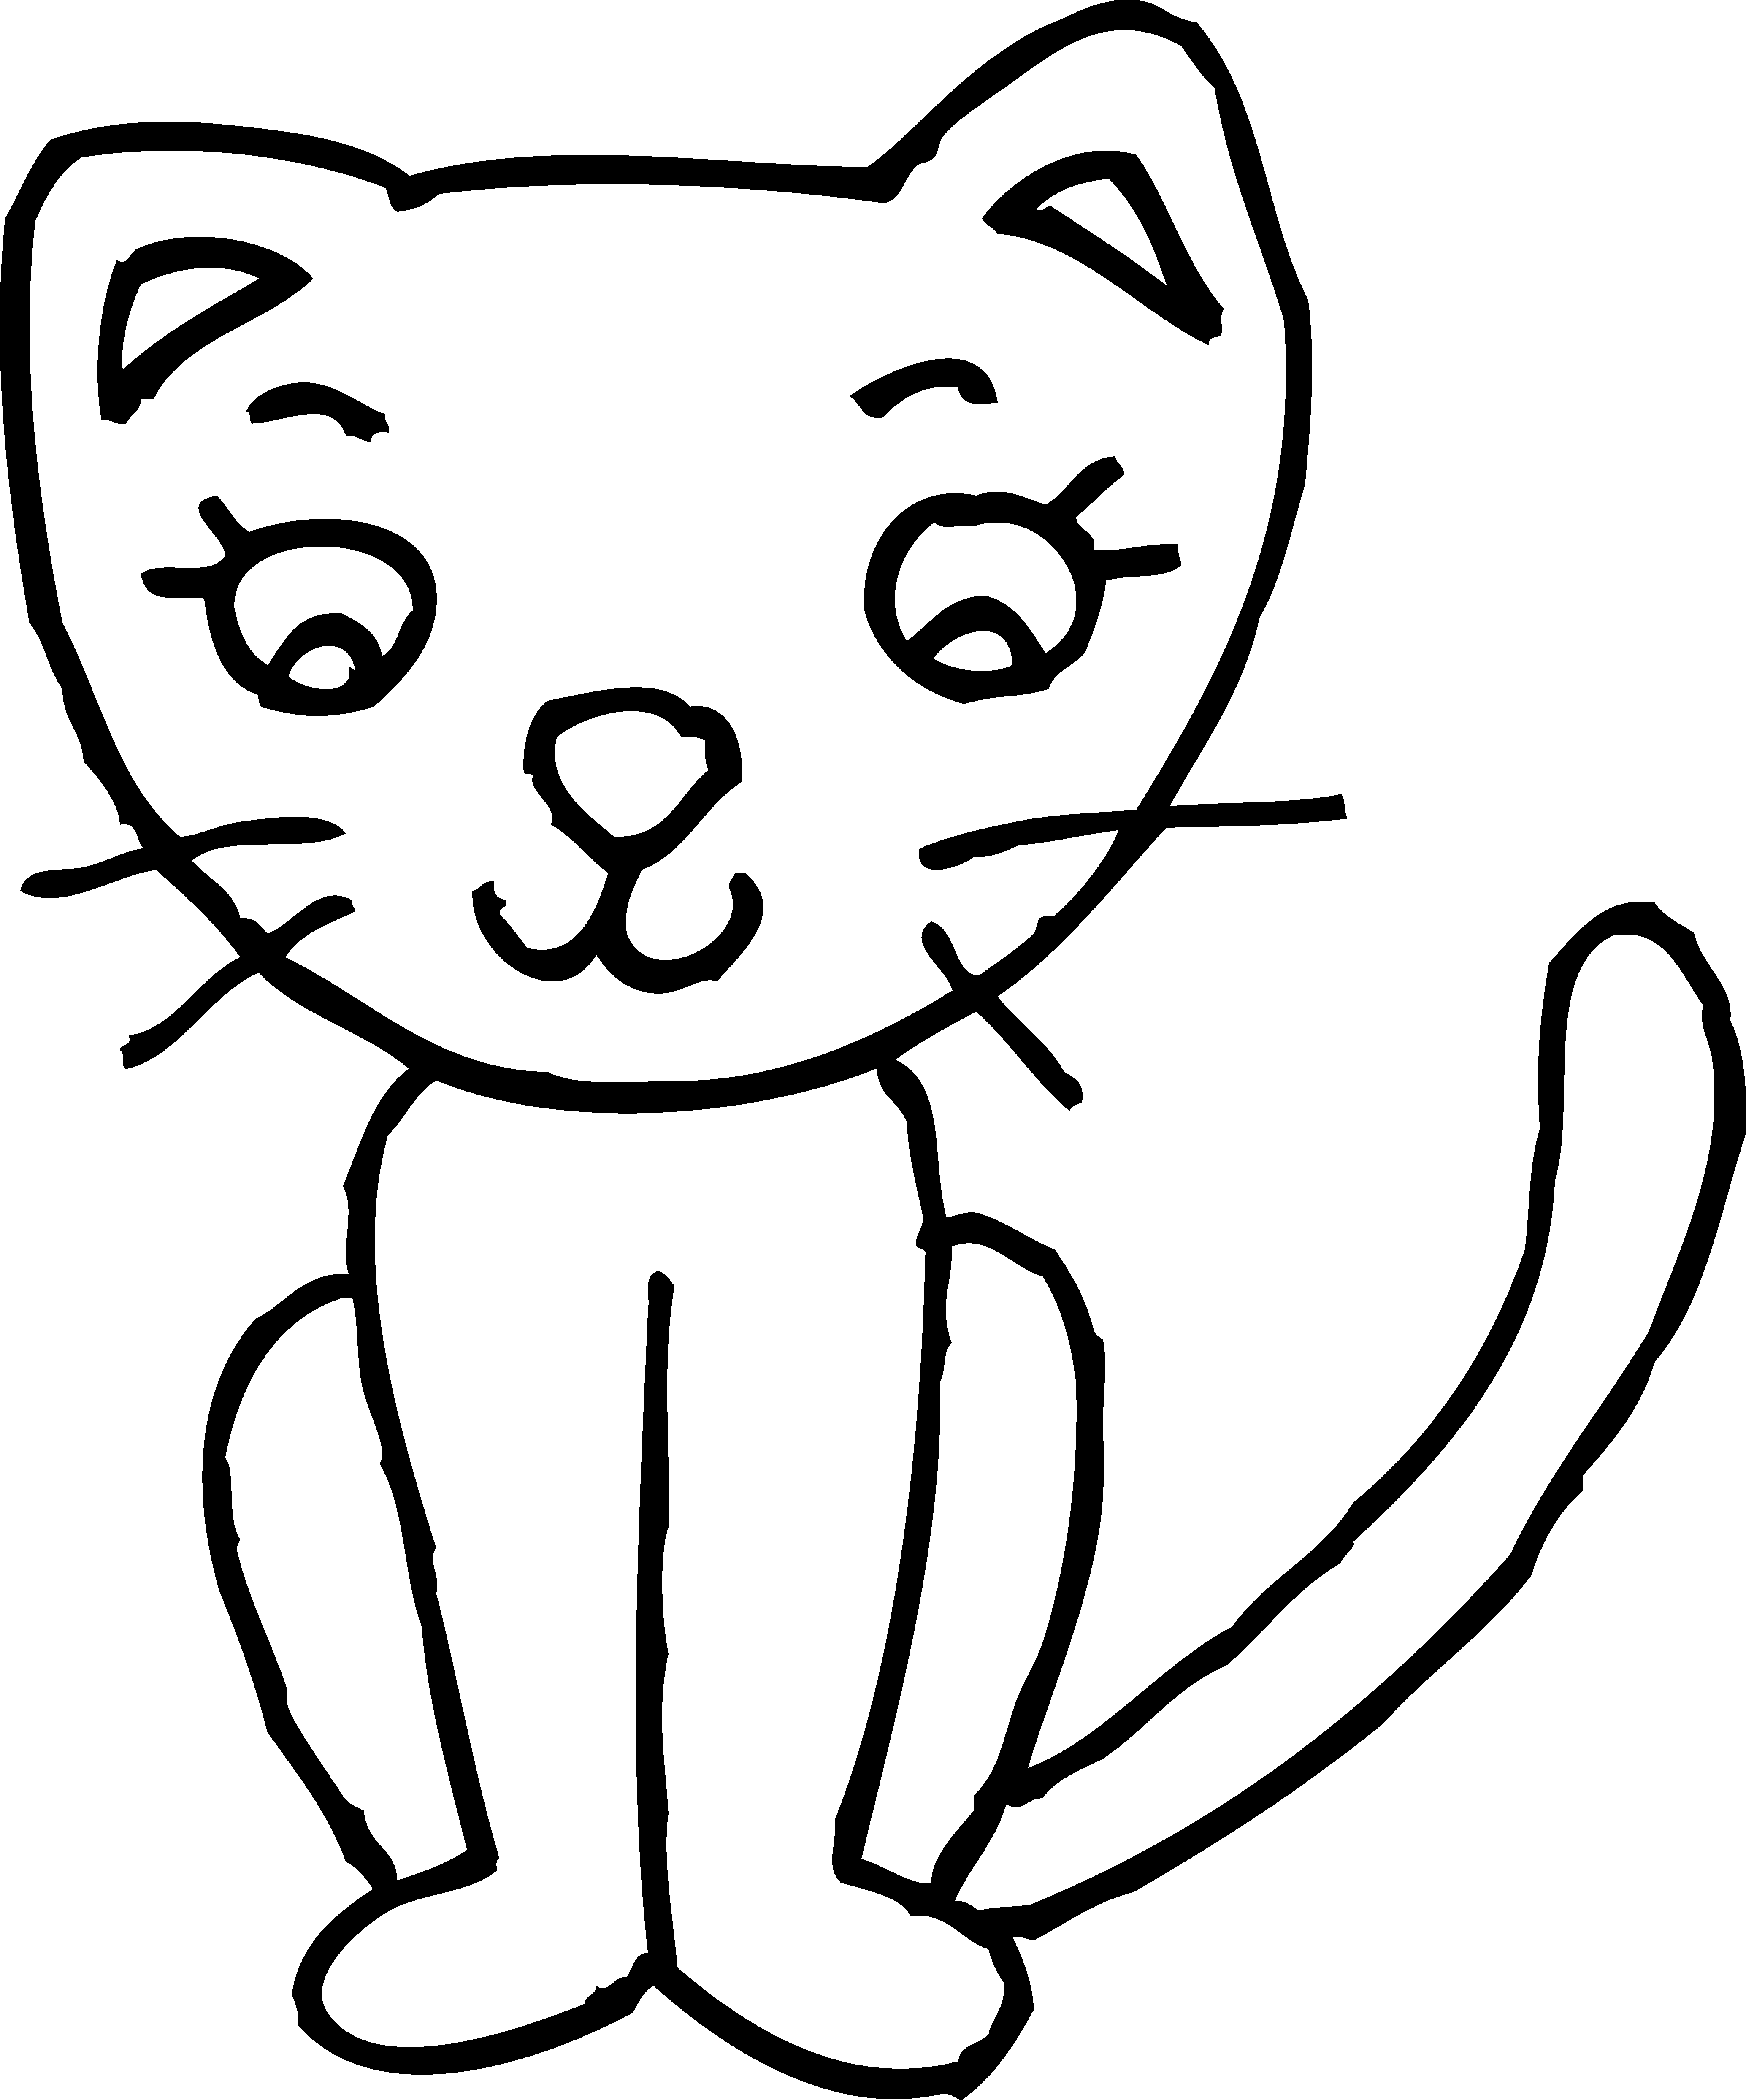 Kitten clipart black and white